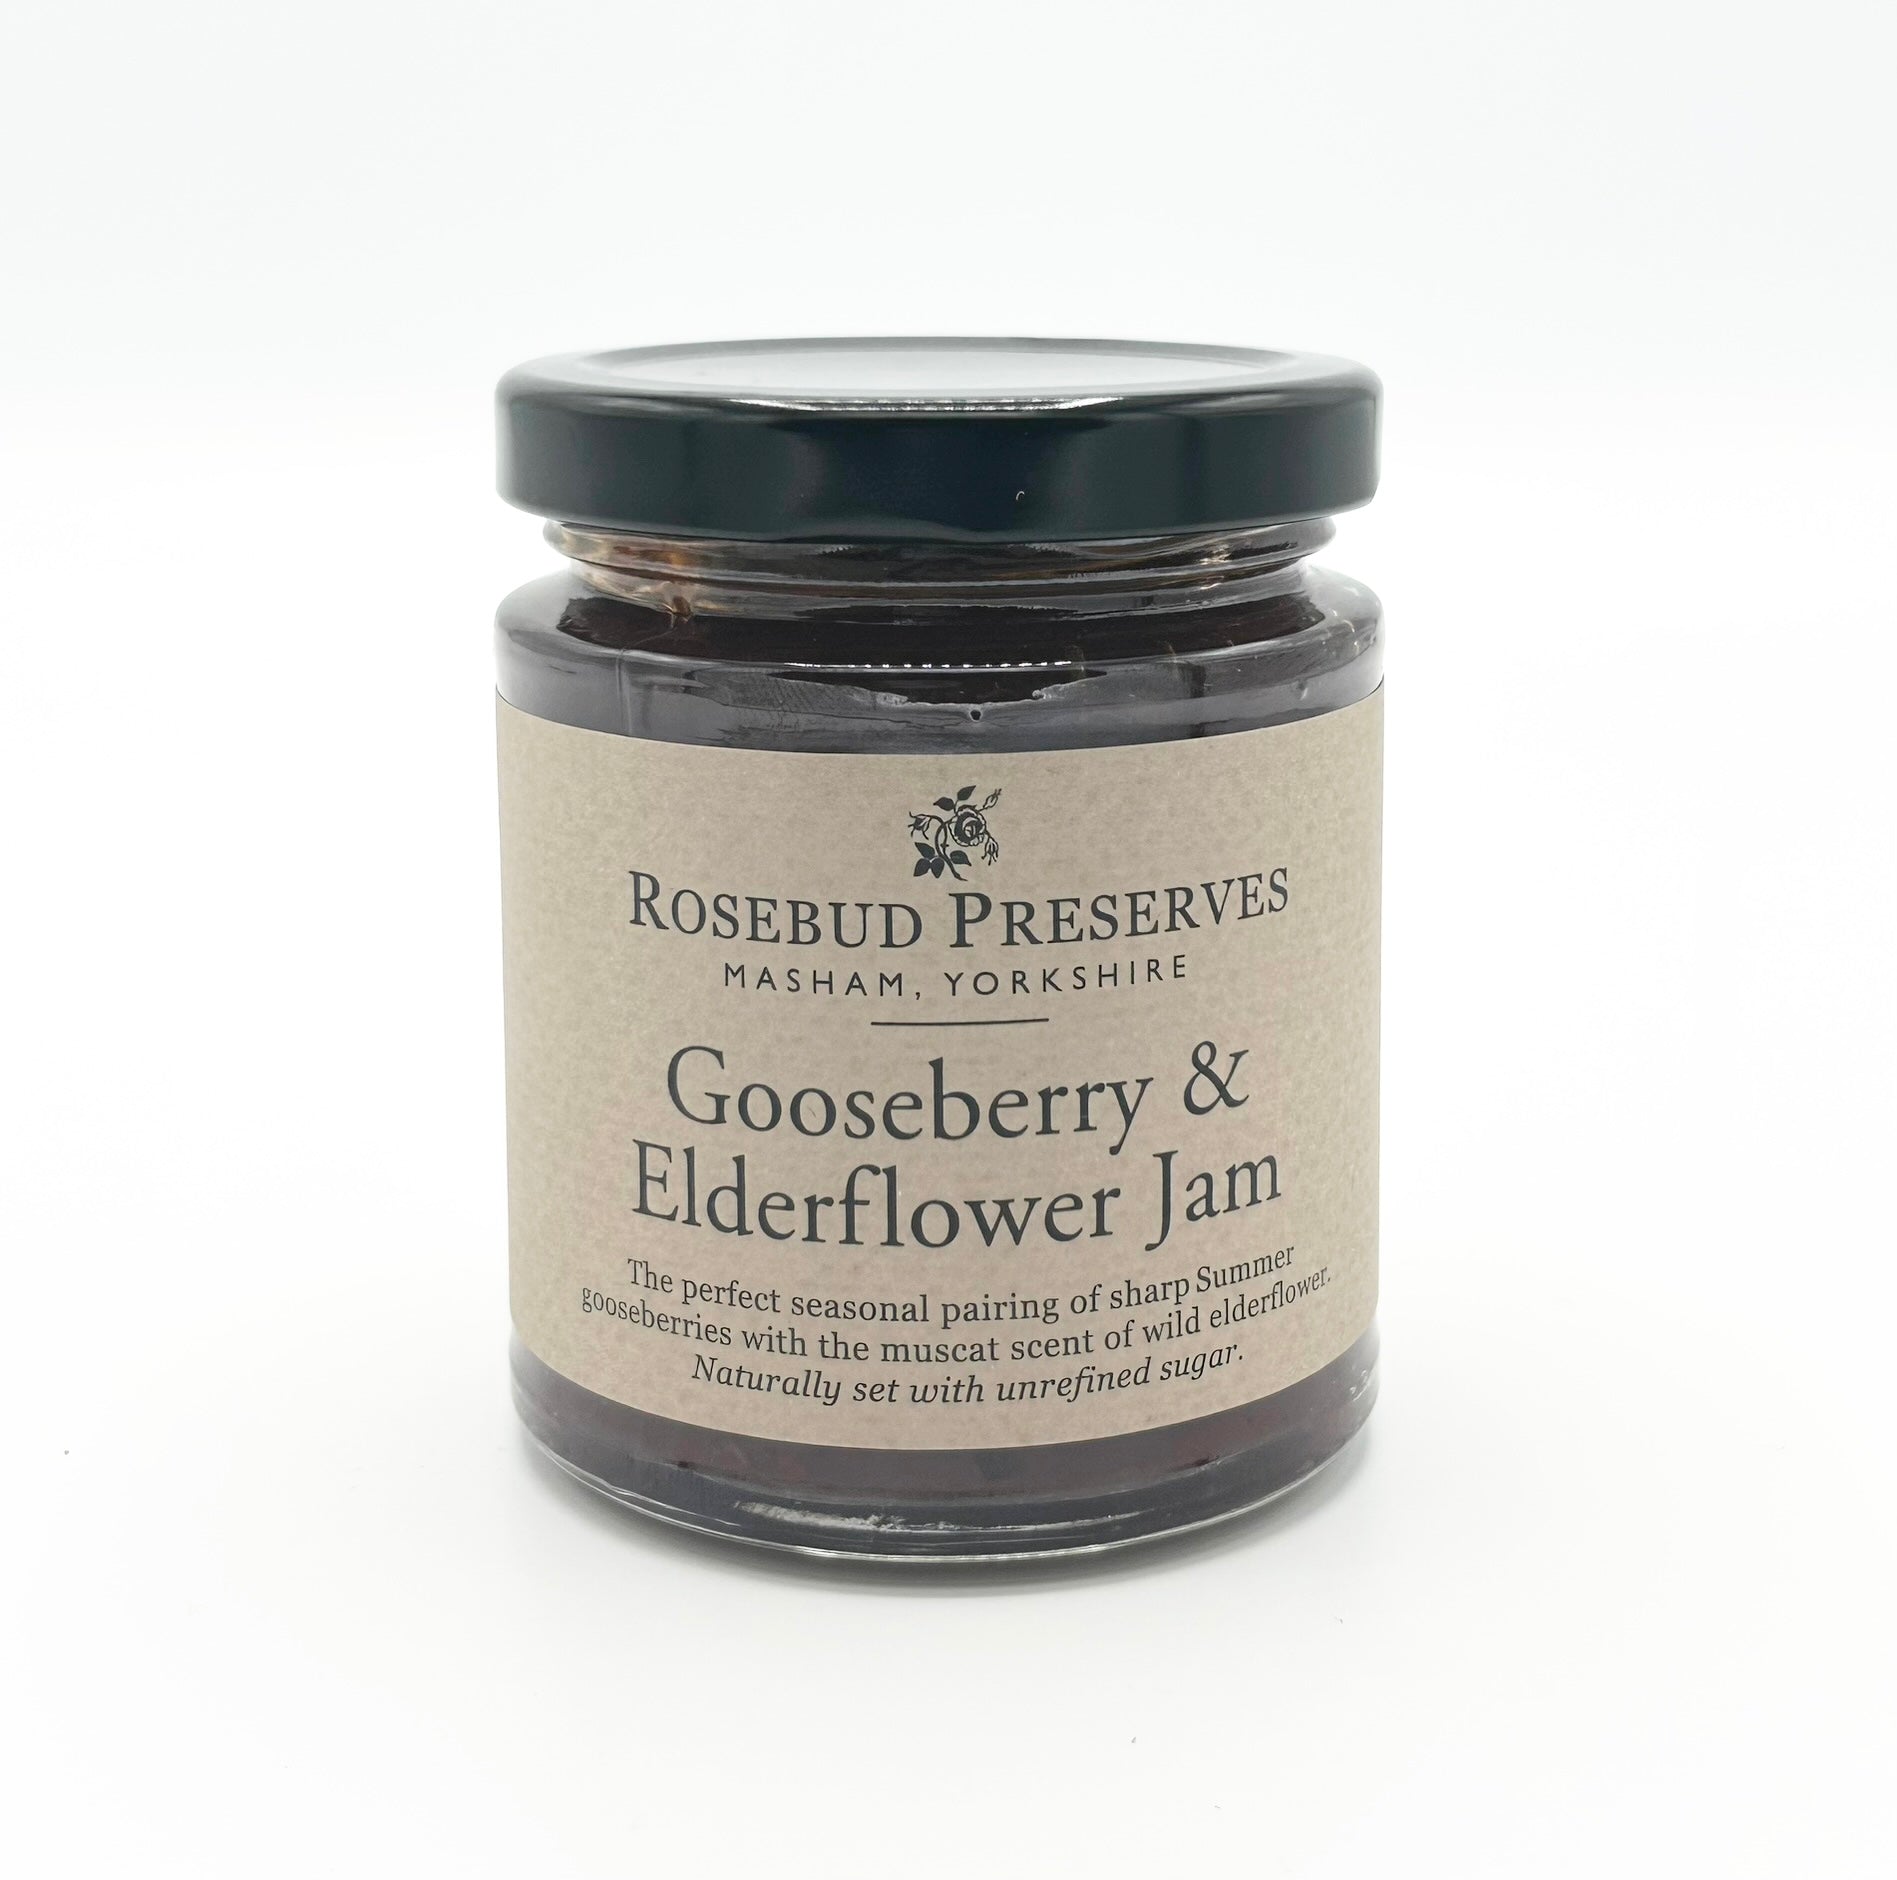 Rosebud preserves Gooseberry & Elderflower jam